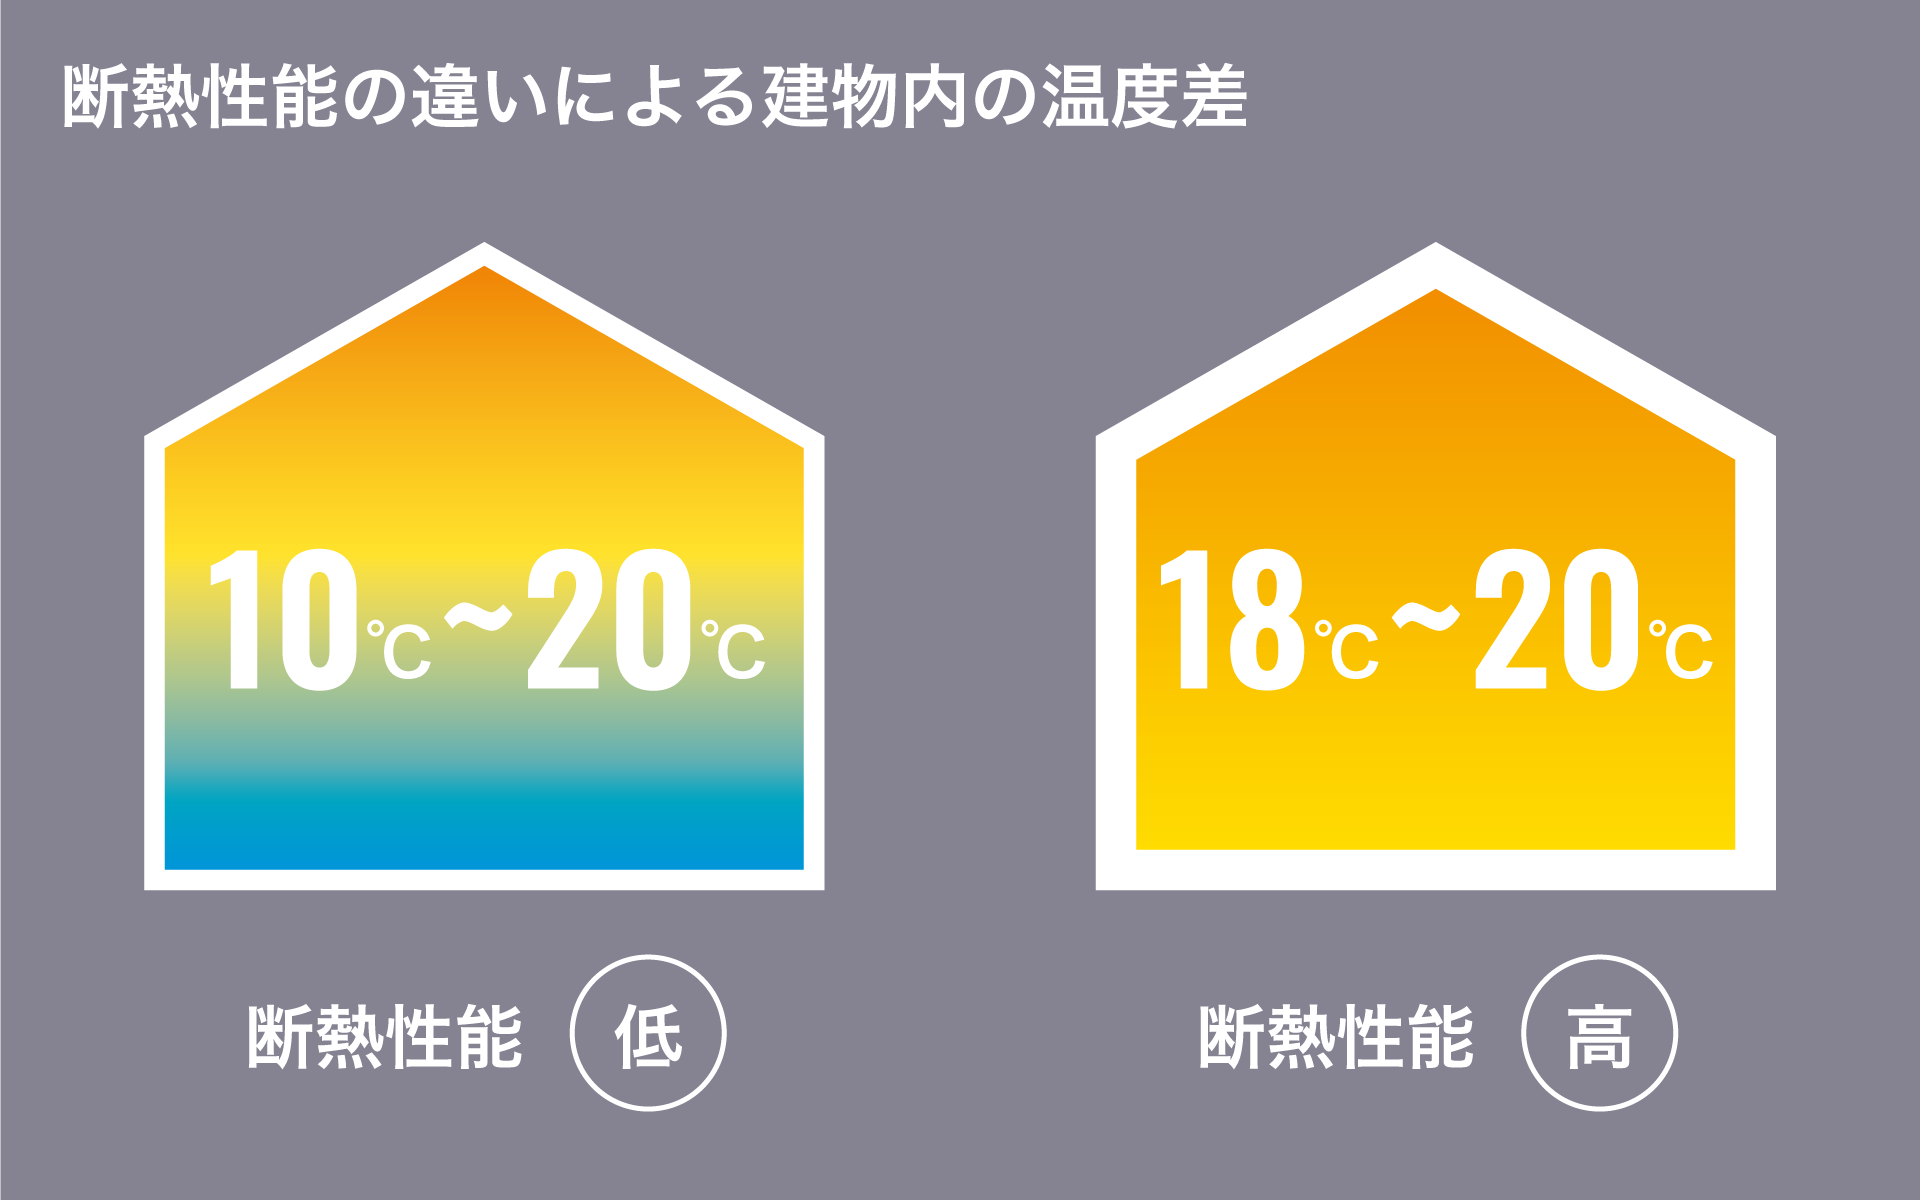 断熱性能の違いによる建物内の温度差